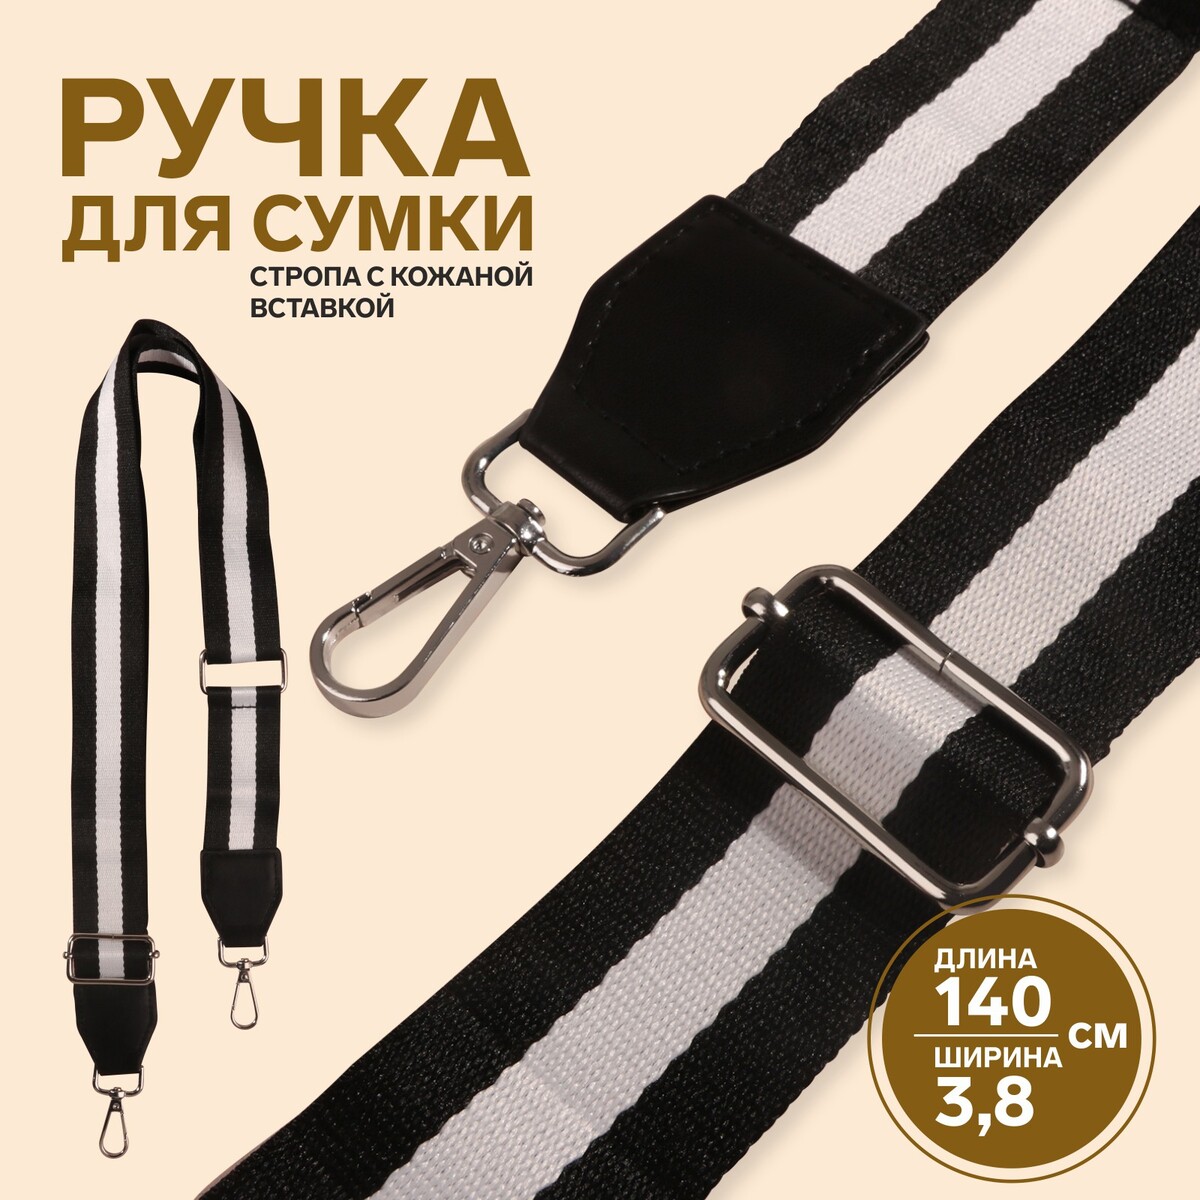 Ручка для сумки, стропа с кожаной вставкой, 140 × 3,8 см, цвет черный/белый ручка для сумки шнуры 60 × 1 8 см с пришивными петлями 5 8 см белый серебряный